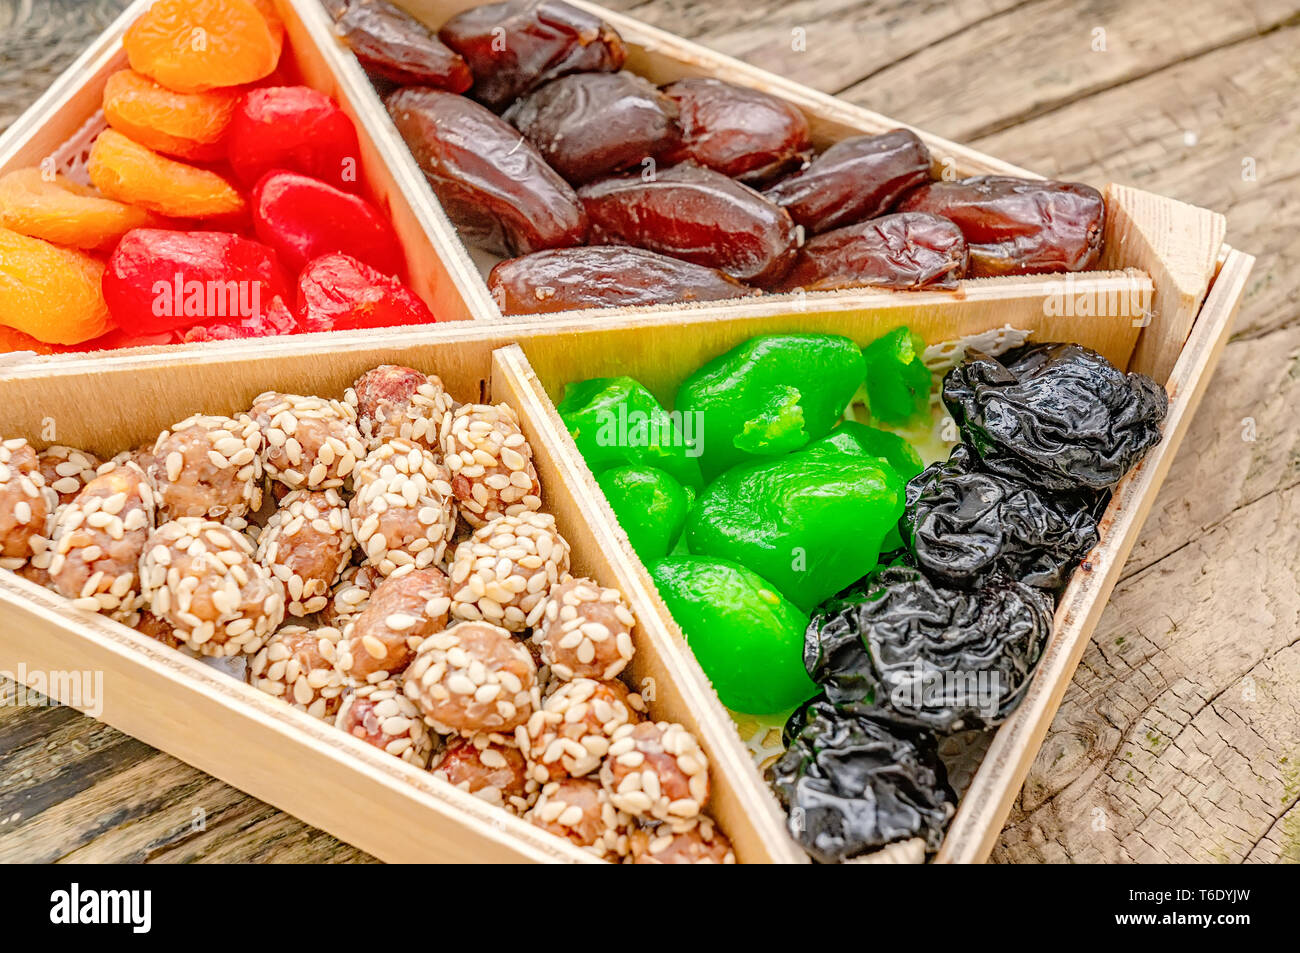 Turkish Delight orientalische Süßigkeiten Trockenfrüchte und Nüsse in einer Holzkiste. Hintergrund. Gesund Vegan essen. Natürliche Lebensmittel. Selektive konzentrieren. Stockfoto